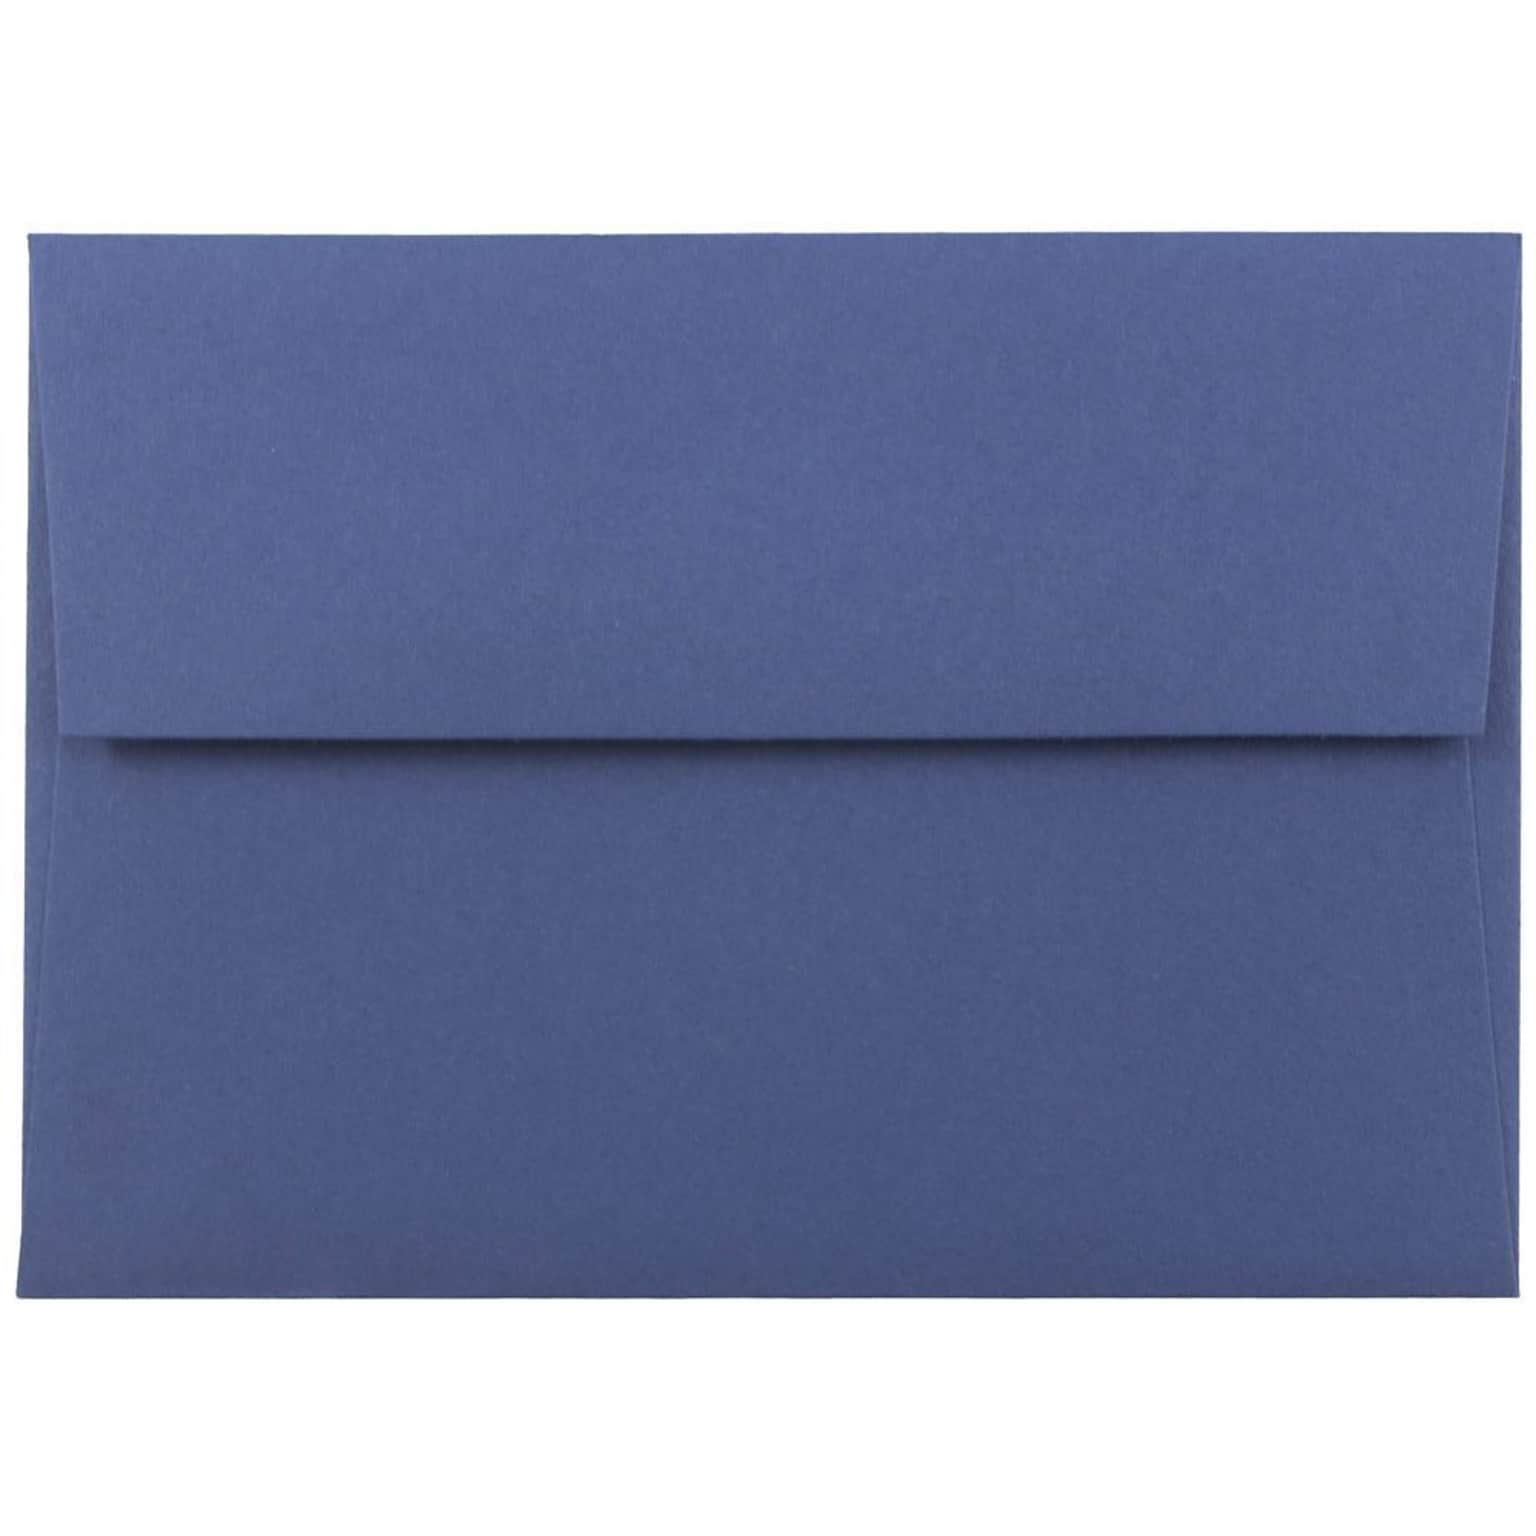 JAM Paper 4Bar A1 Invitation Envelopes, 3.625 x 5.125, Presidential Blue, 50/Pack (563916904i)